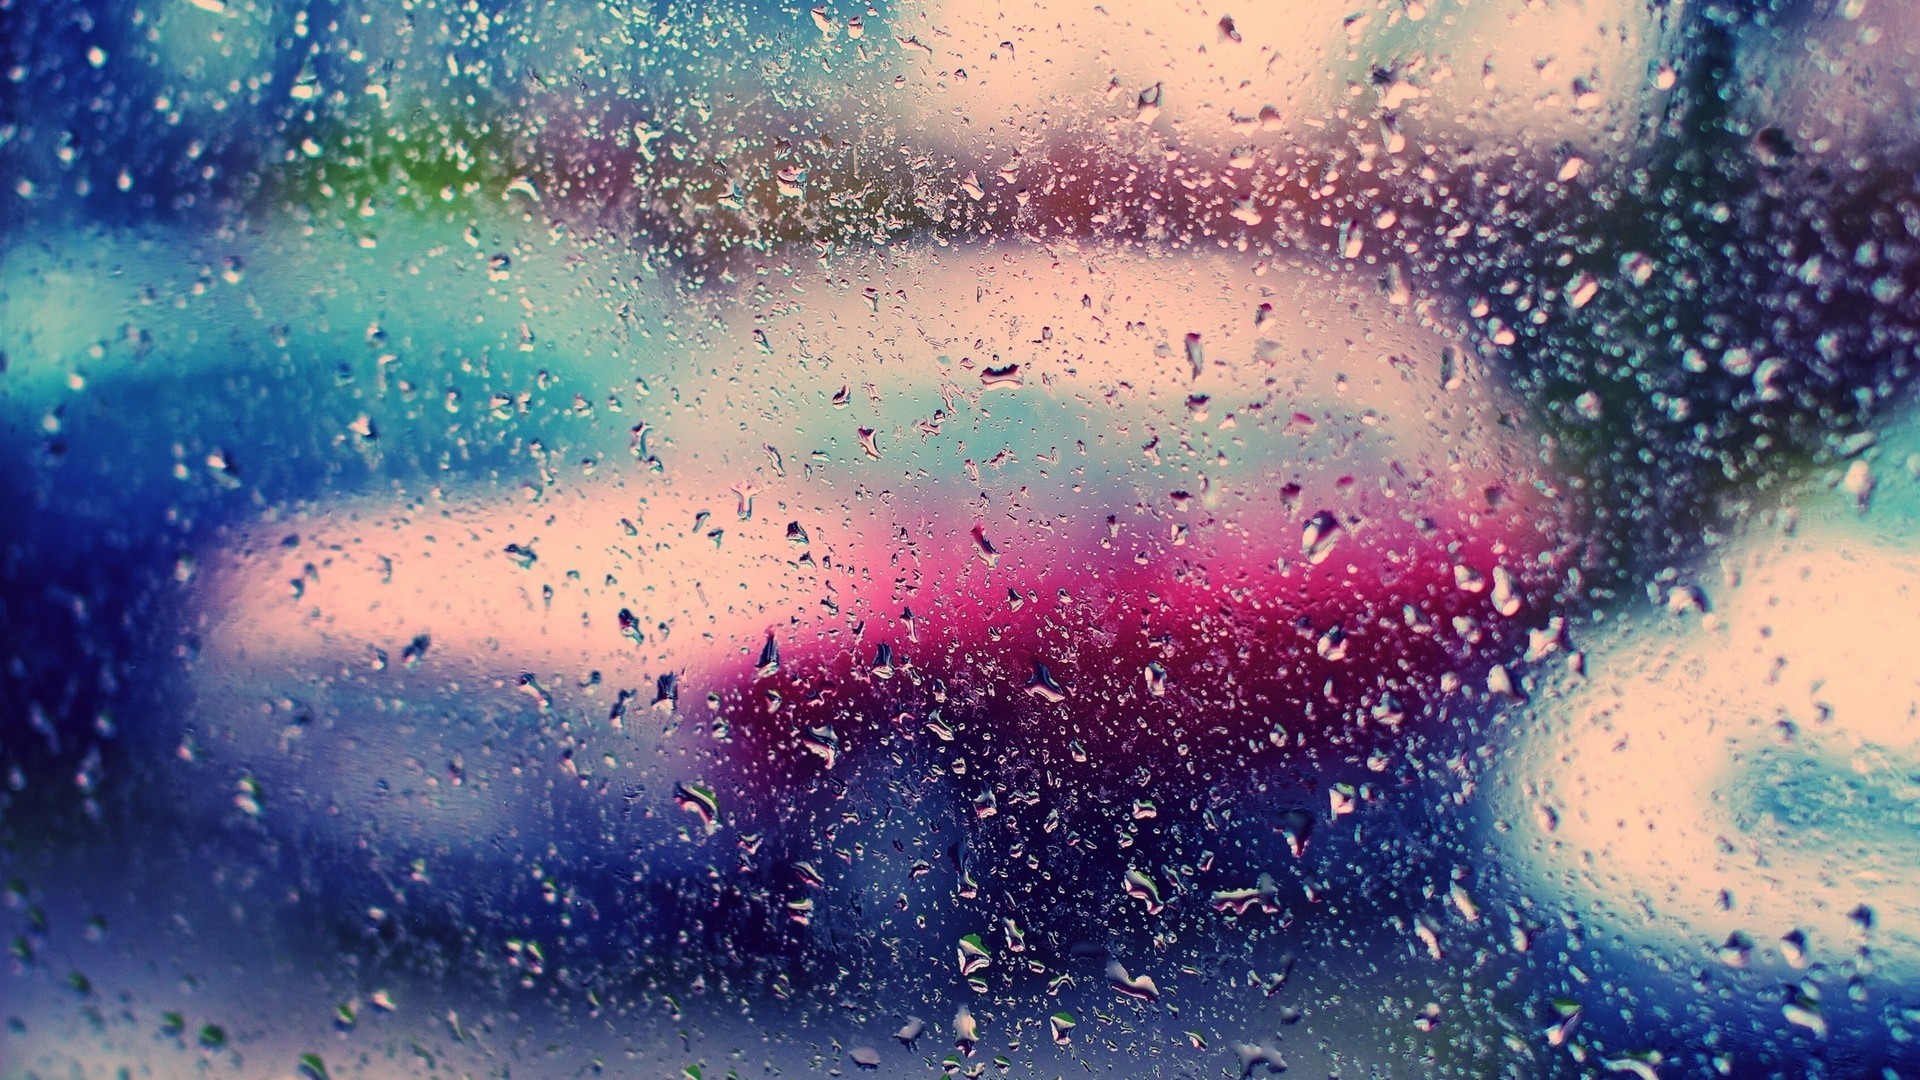 Rain On Window - HD Wallpaper 